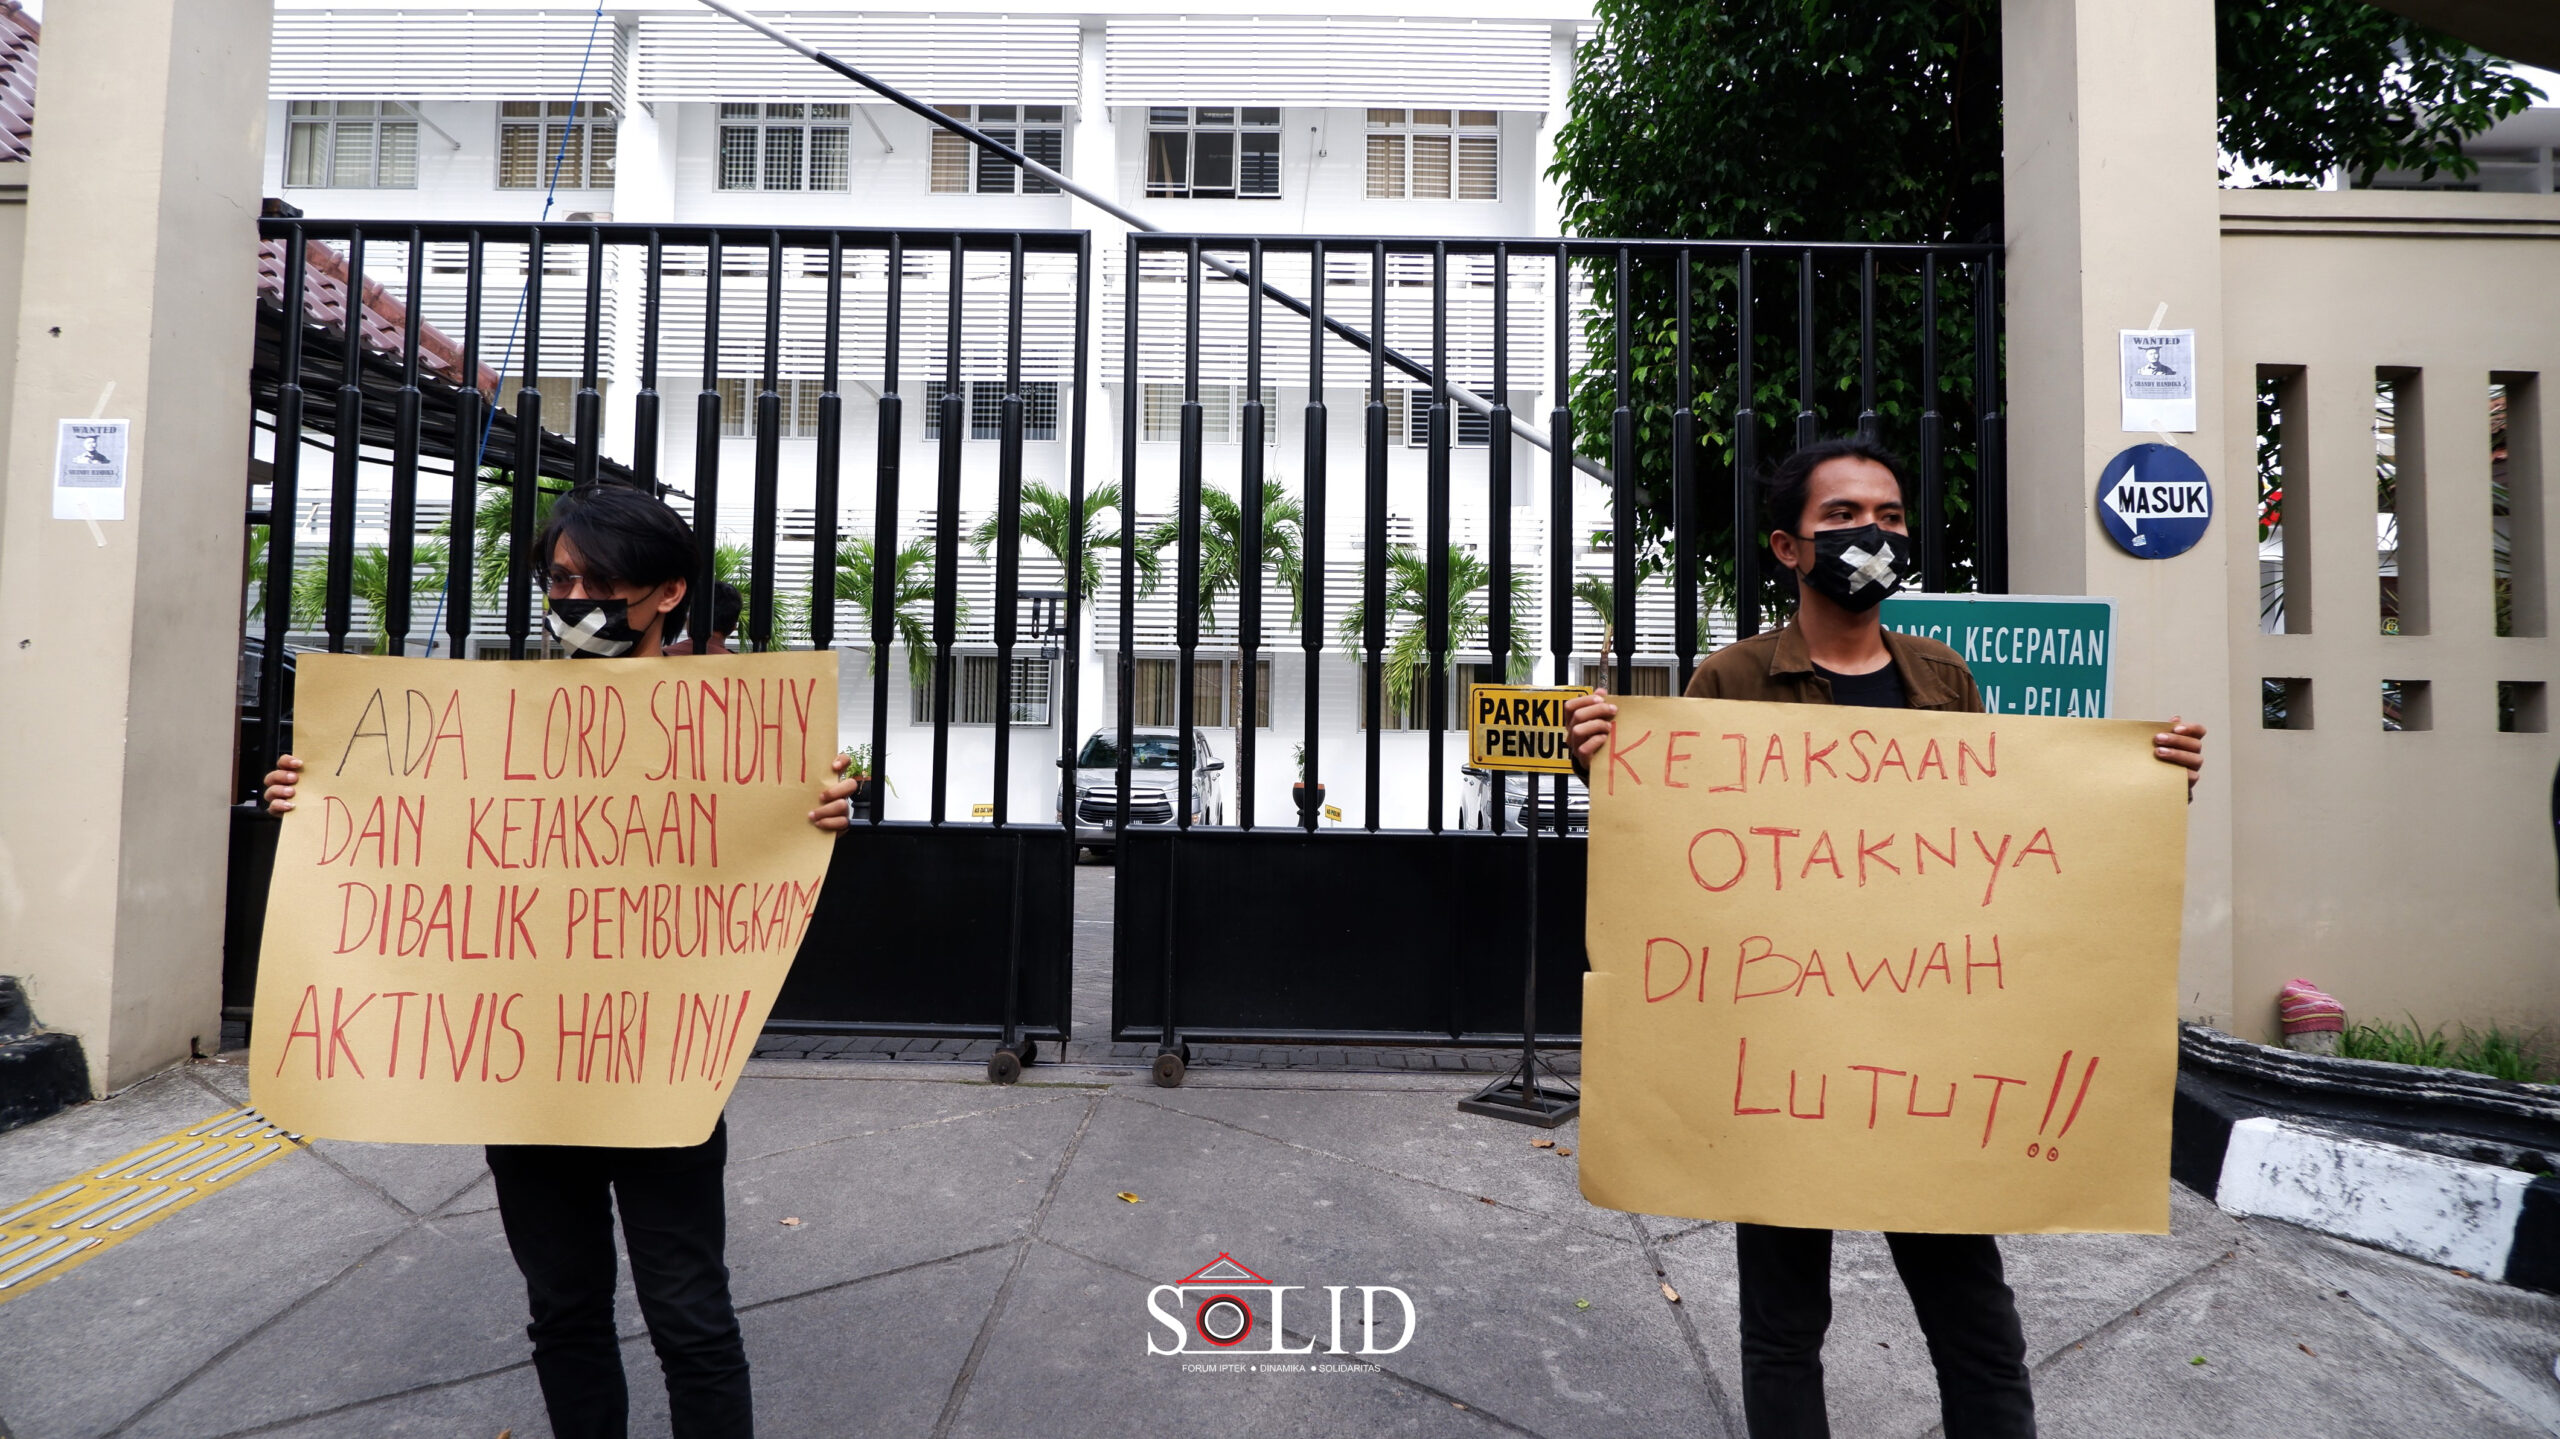 Massa Aksi berdiri di depan pagar kantor Kejaksaan DIY dengan membawa selebaran sebagai bentuk protes terhadap kejaksaan.